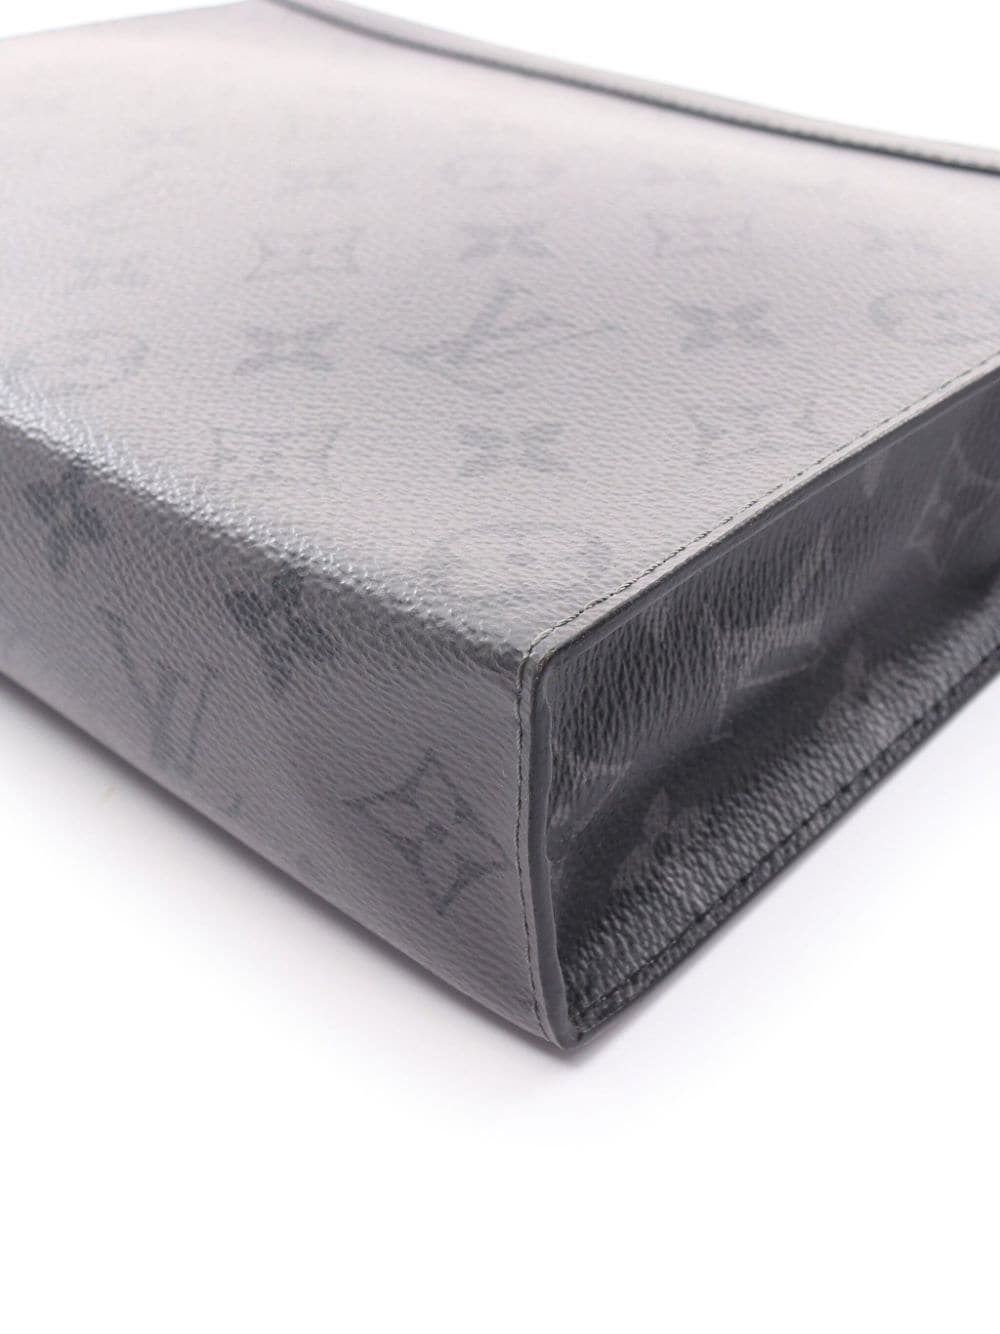 Louis Vuitton - Authenticated Pochette Voyage Clutch Bag - Cloth Black for Women, Good Condition